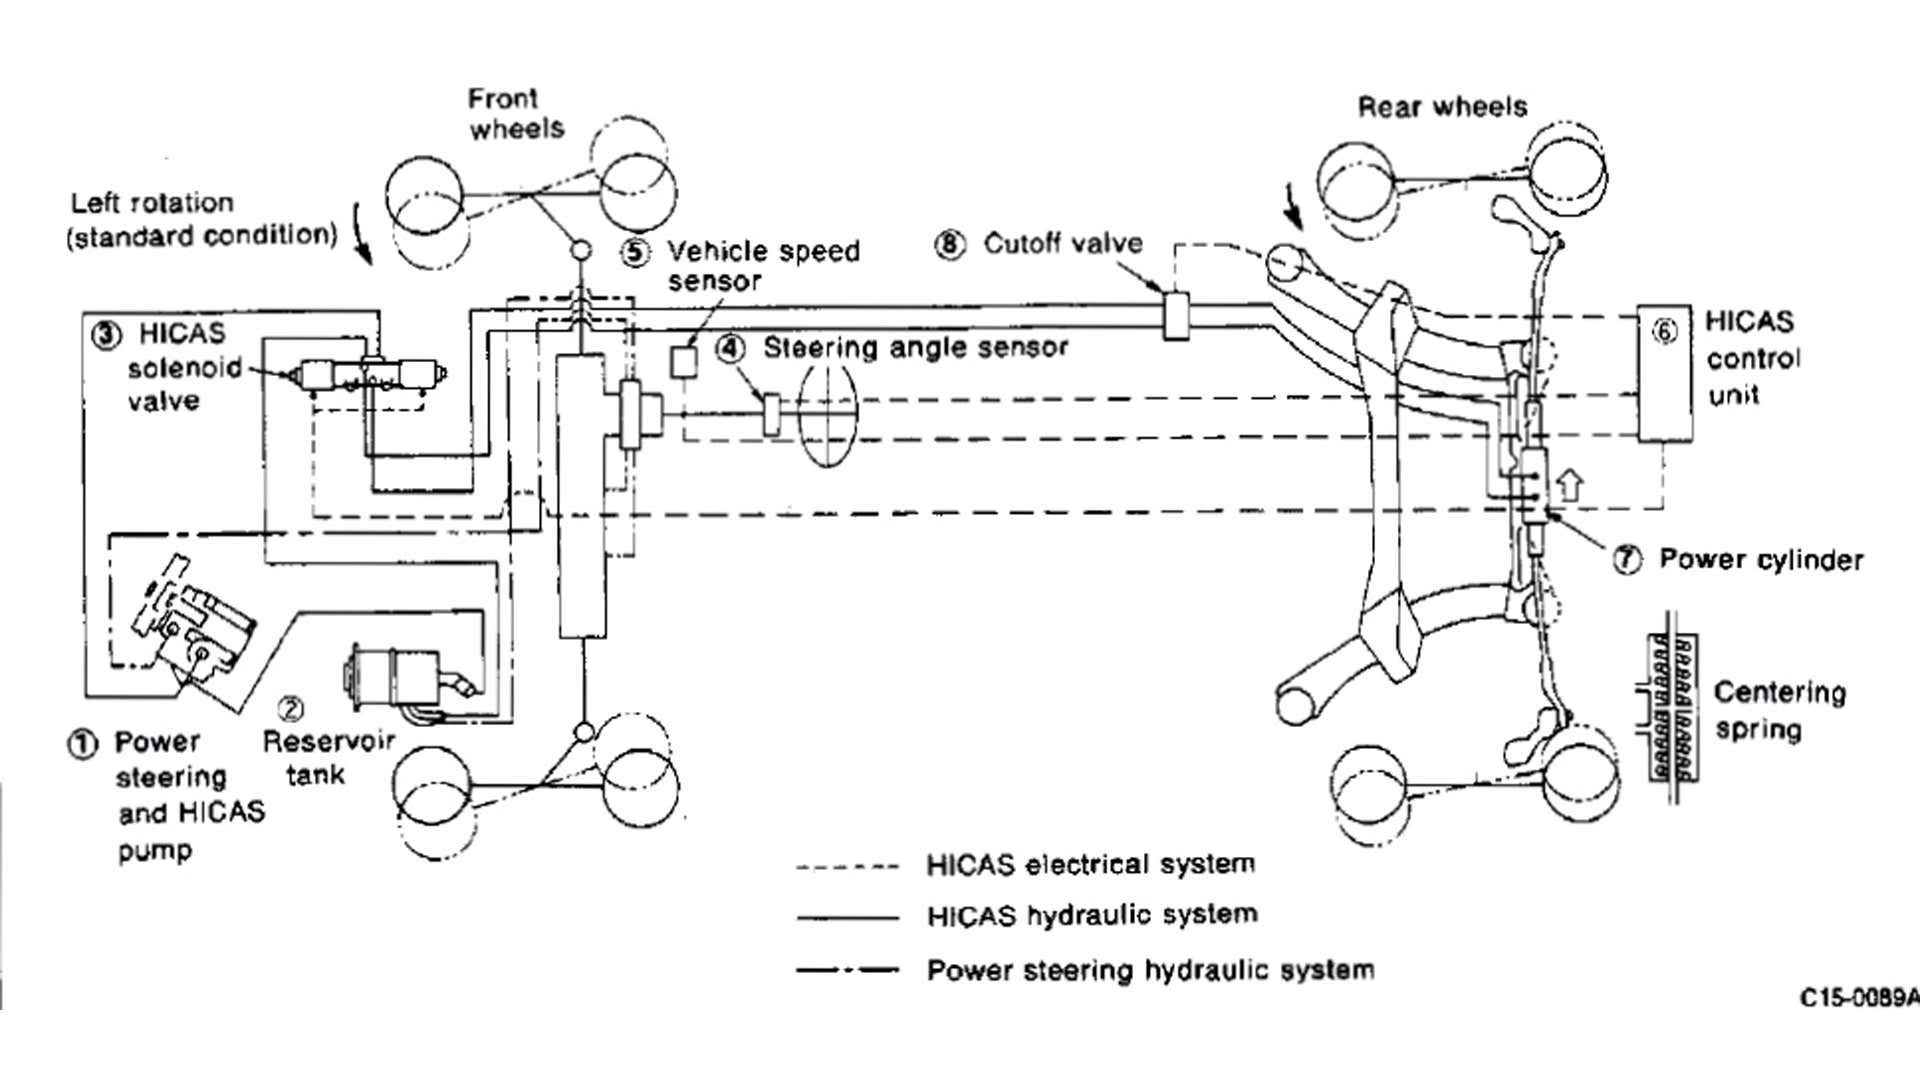 日产的超级HICAS转向图来自R32 GT-R。